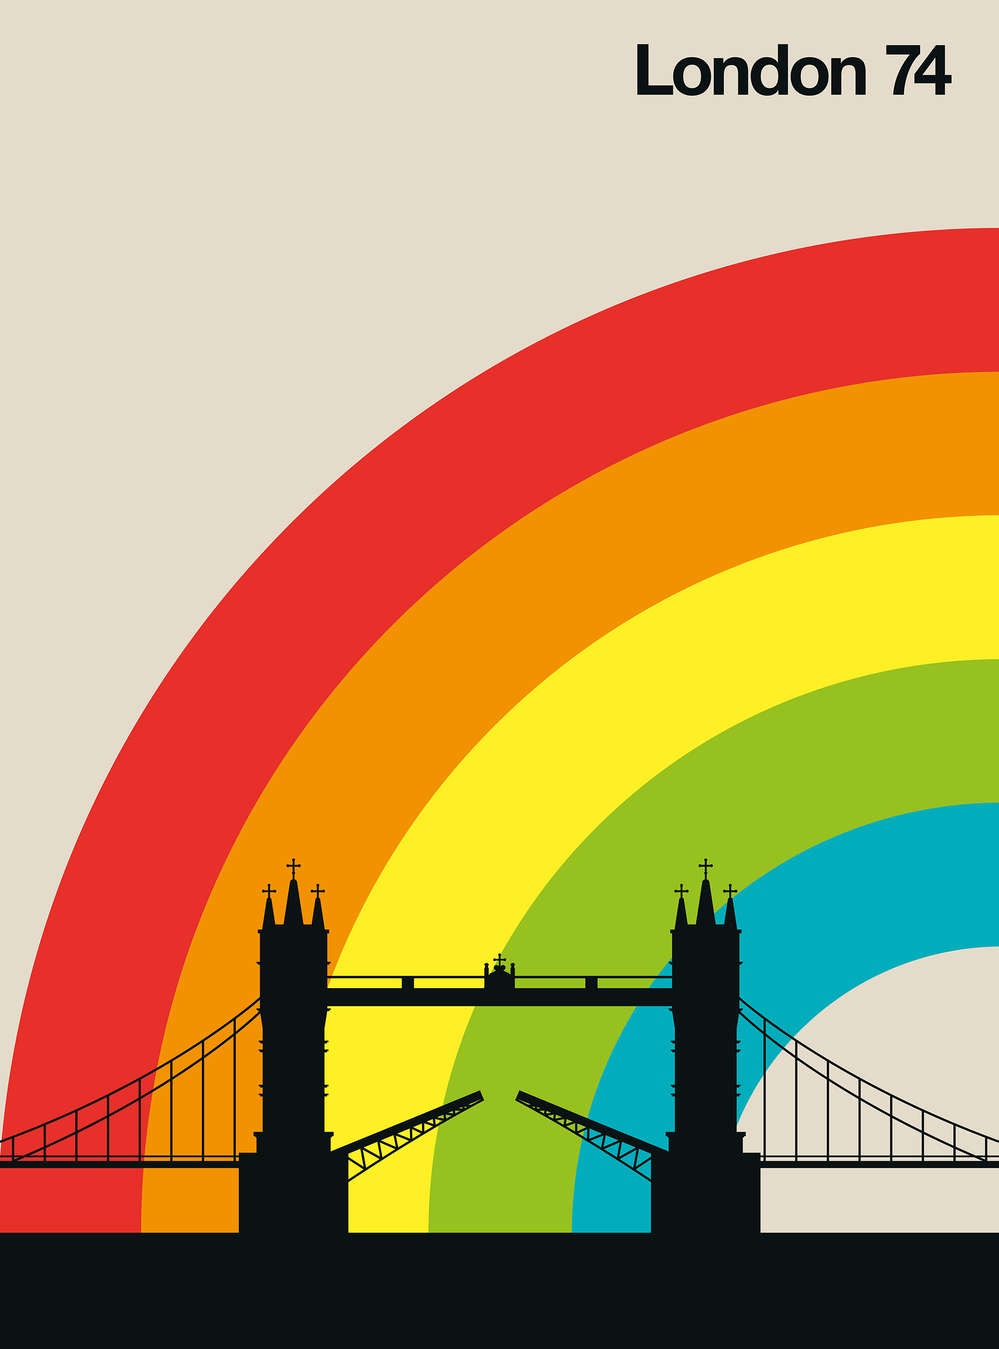             Retro Fototapete London Tower Bridge & Regenbogen
        